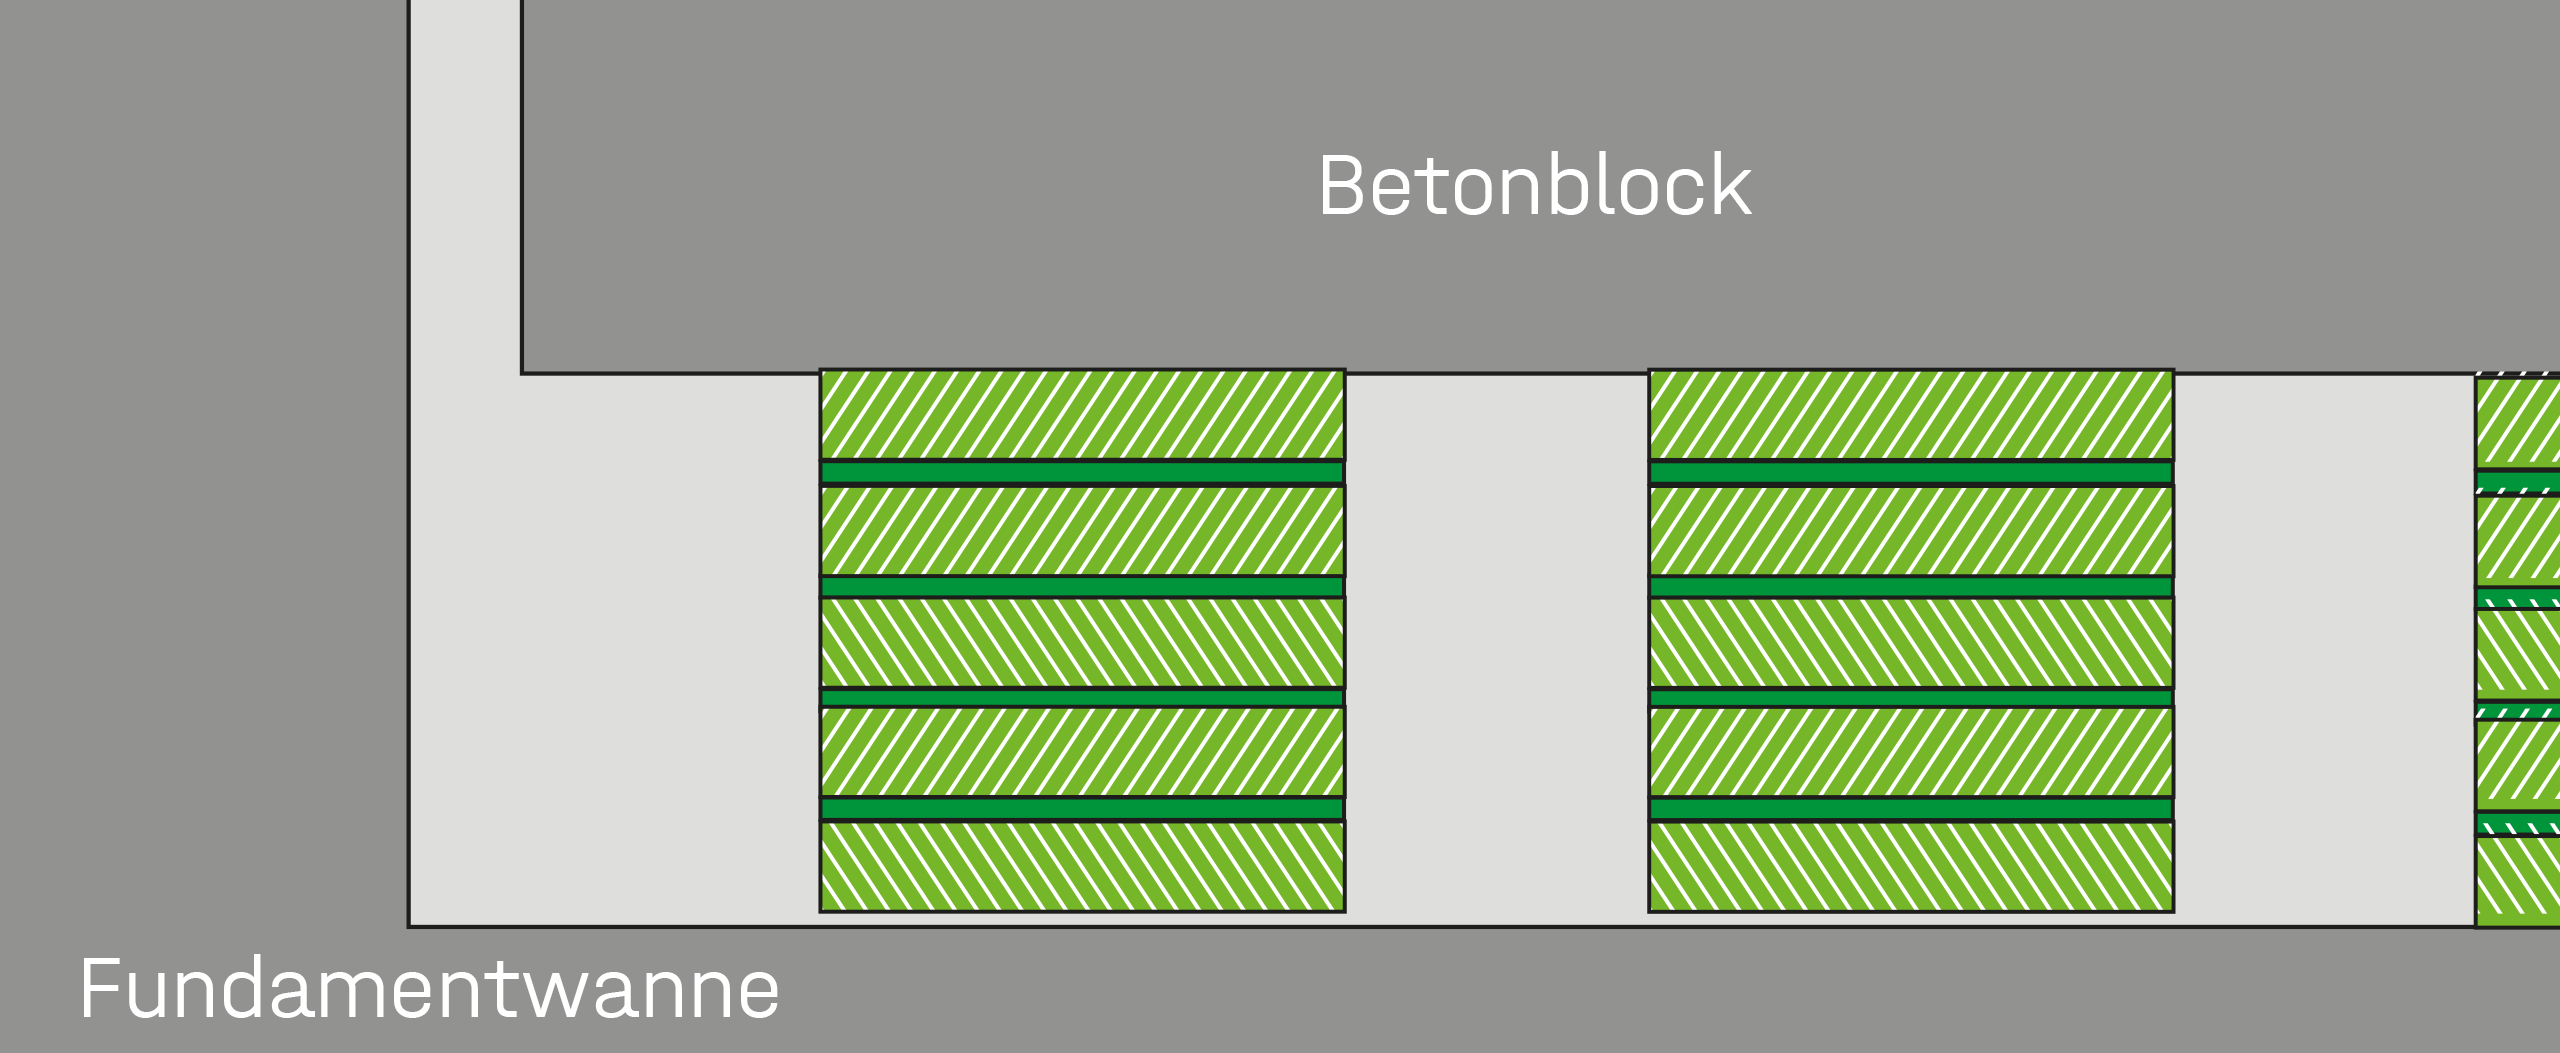 Schematische Darstellung von Isolier-Plattensätzen unter Betonblock